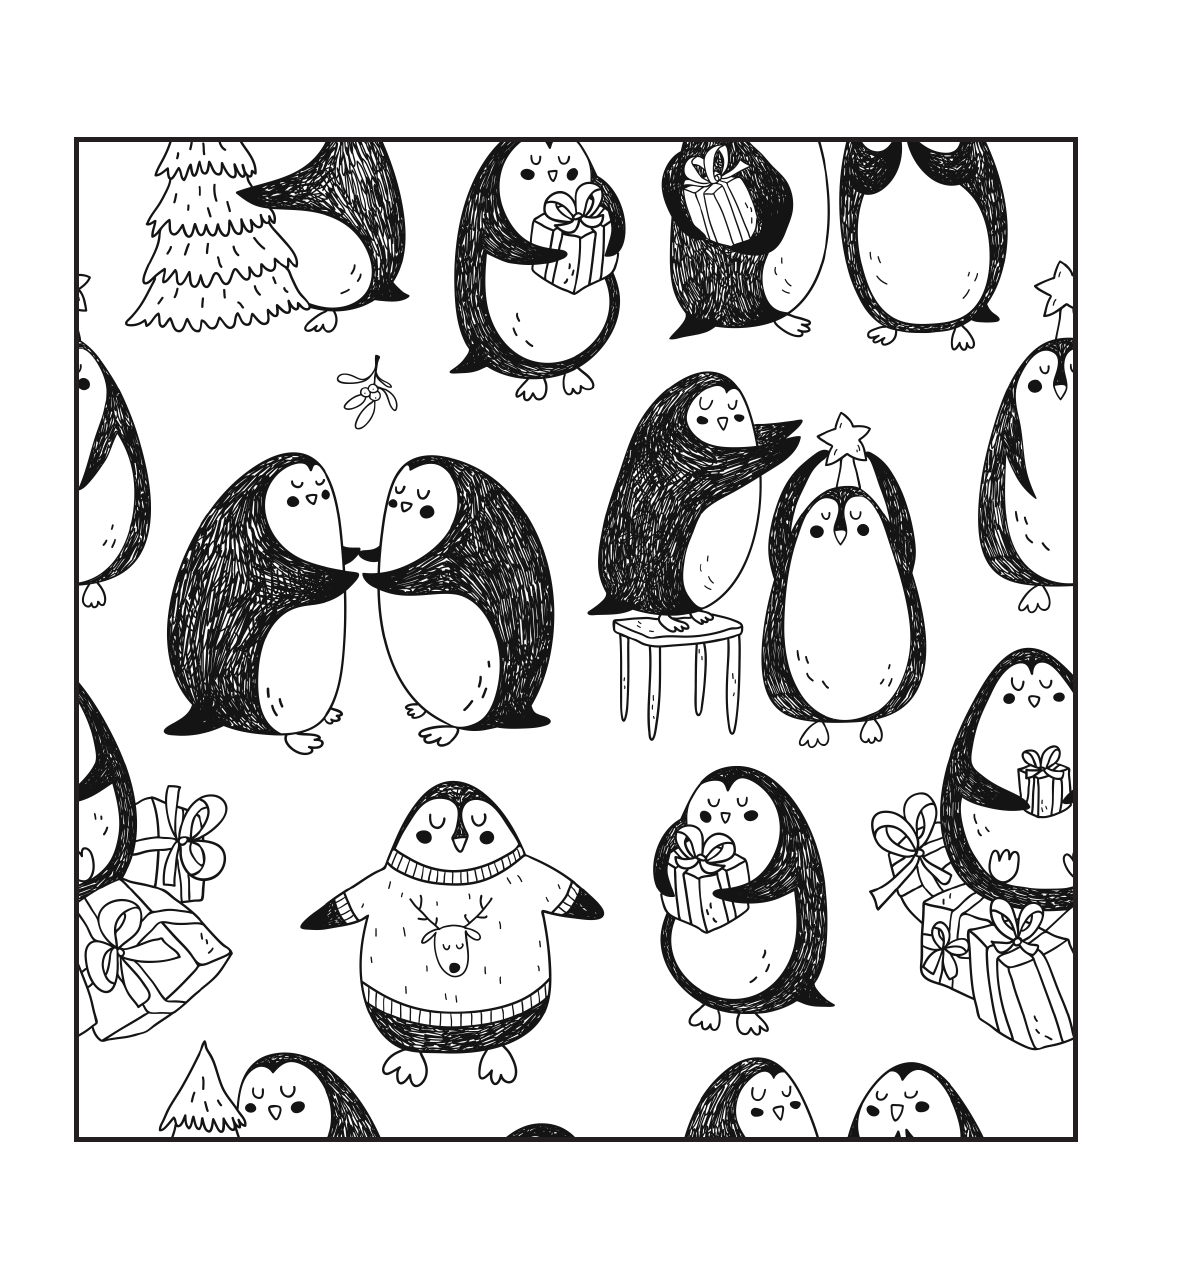  Пингвины. Рисунки для медитаций - страница 4